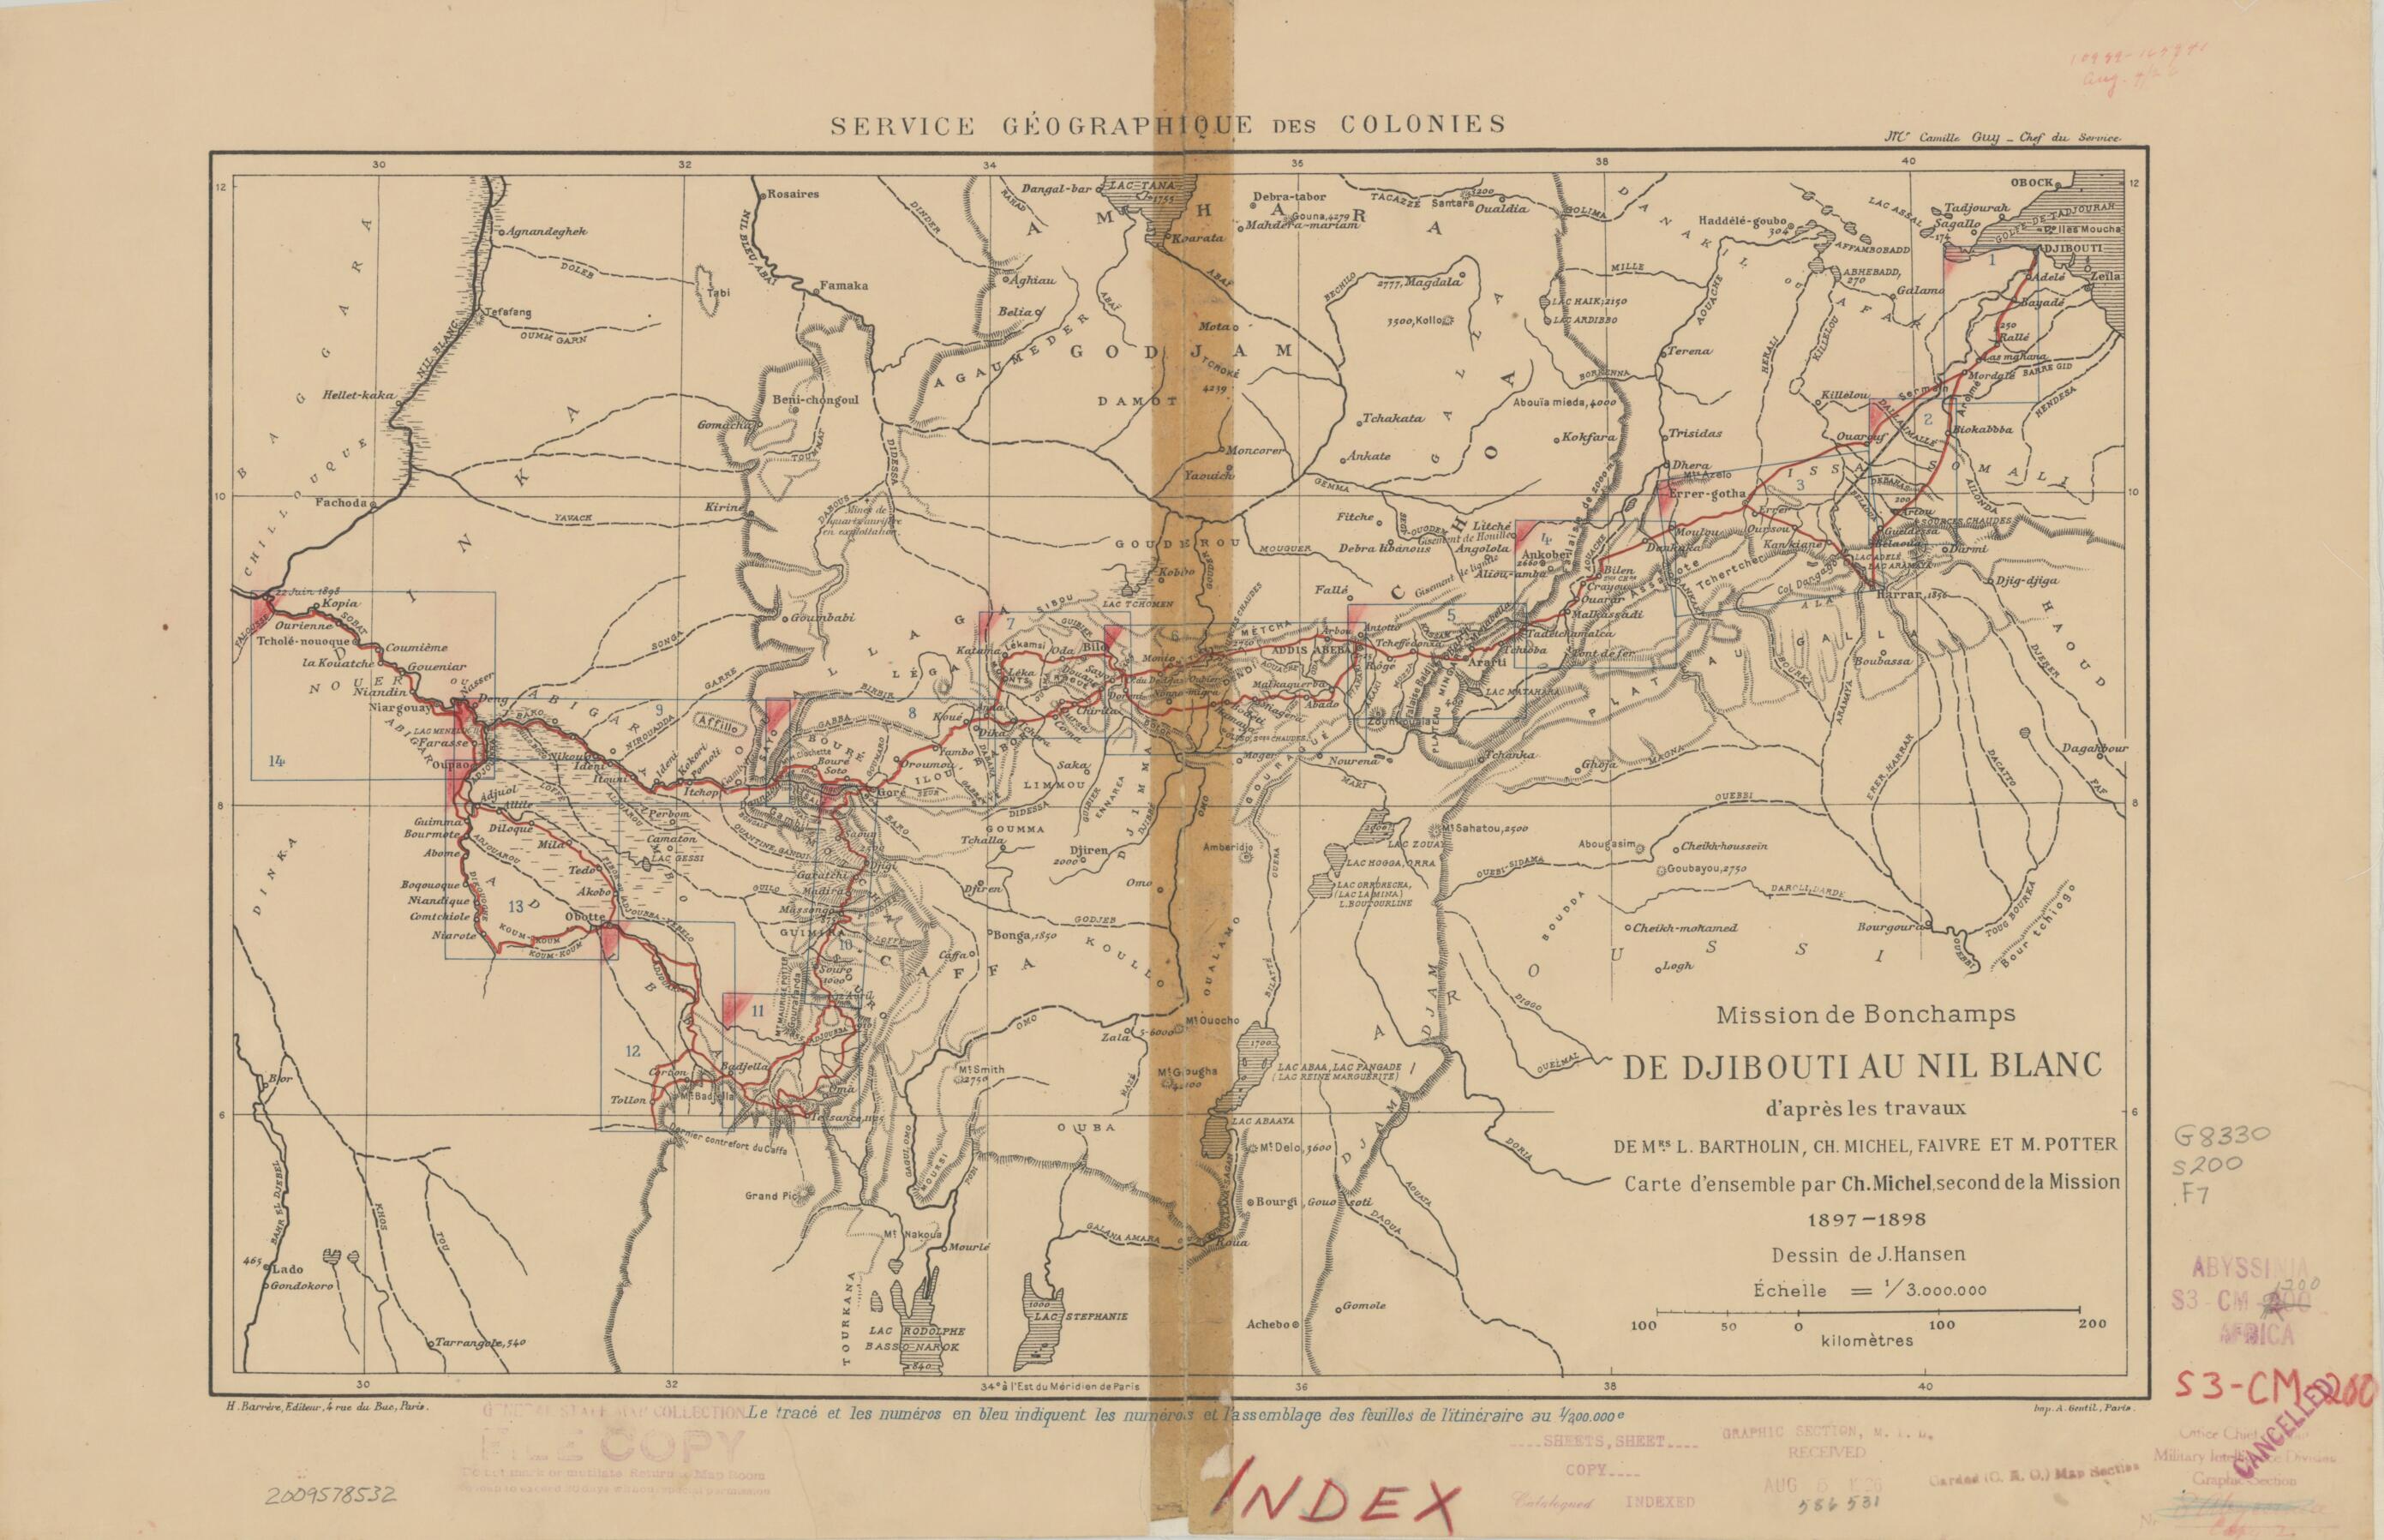 This old map of Mission De Bonchamps De Djibouti Au Nil Blanc, D&